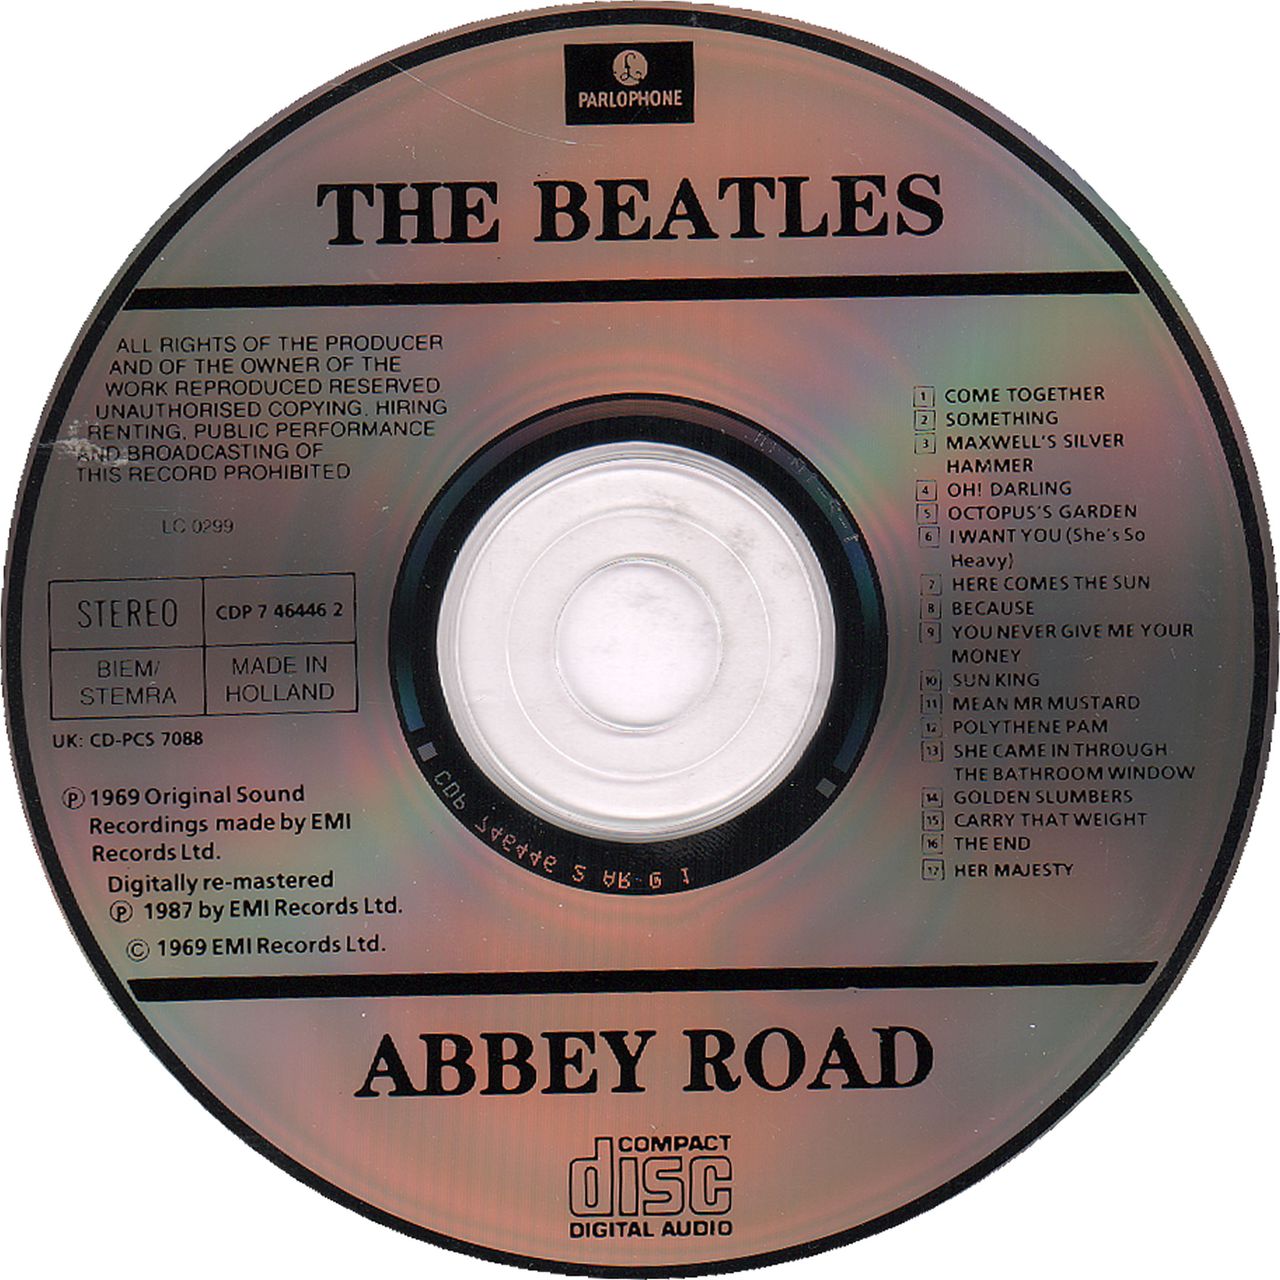 https://ca.rarevinyl.com/cdn/shop/products/the-beatles-abbey-road-holland-dutch-cd-album-cdlp-077774644624-94569c.jpg?v=1684755834